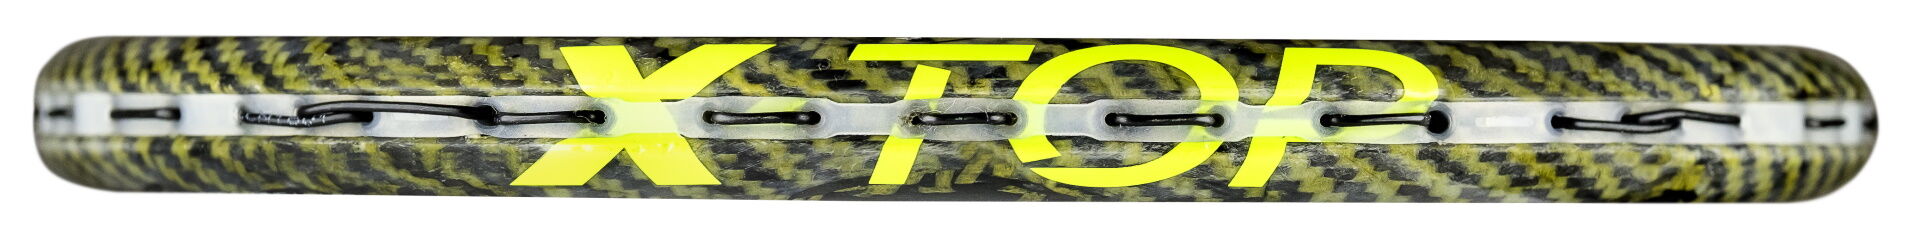 Tecnifibre Carboflex X-Top a különleges szerkezetű ütőfej, amely ellenáll az ütésnek és kopásnak.